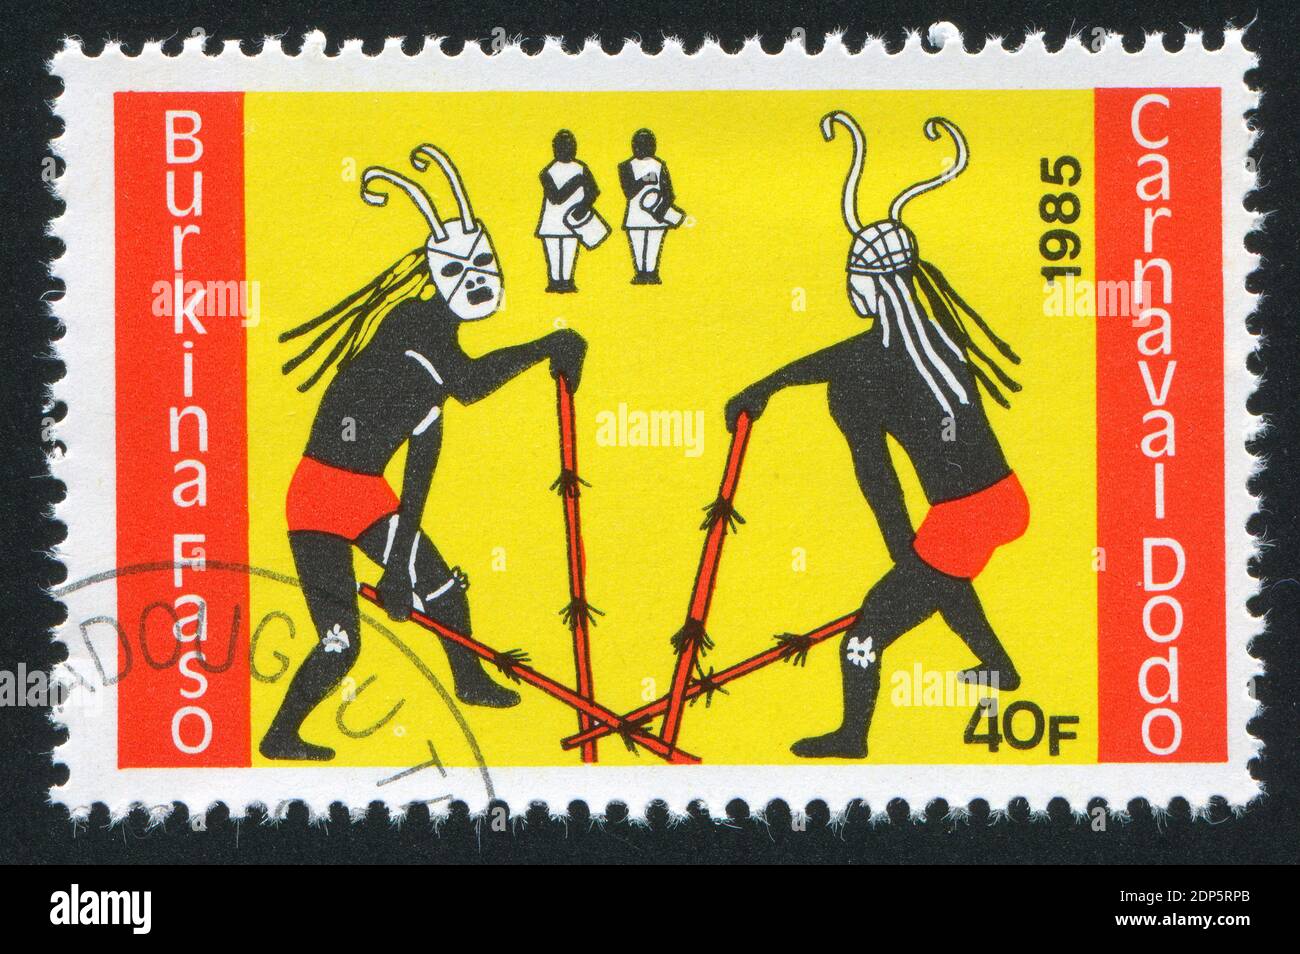 BURKINA FASO - UM 1985: Briefmarke gedruckt von Burkina Faso, zeigt zwei Tänzer, um 1985 Stockfoto